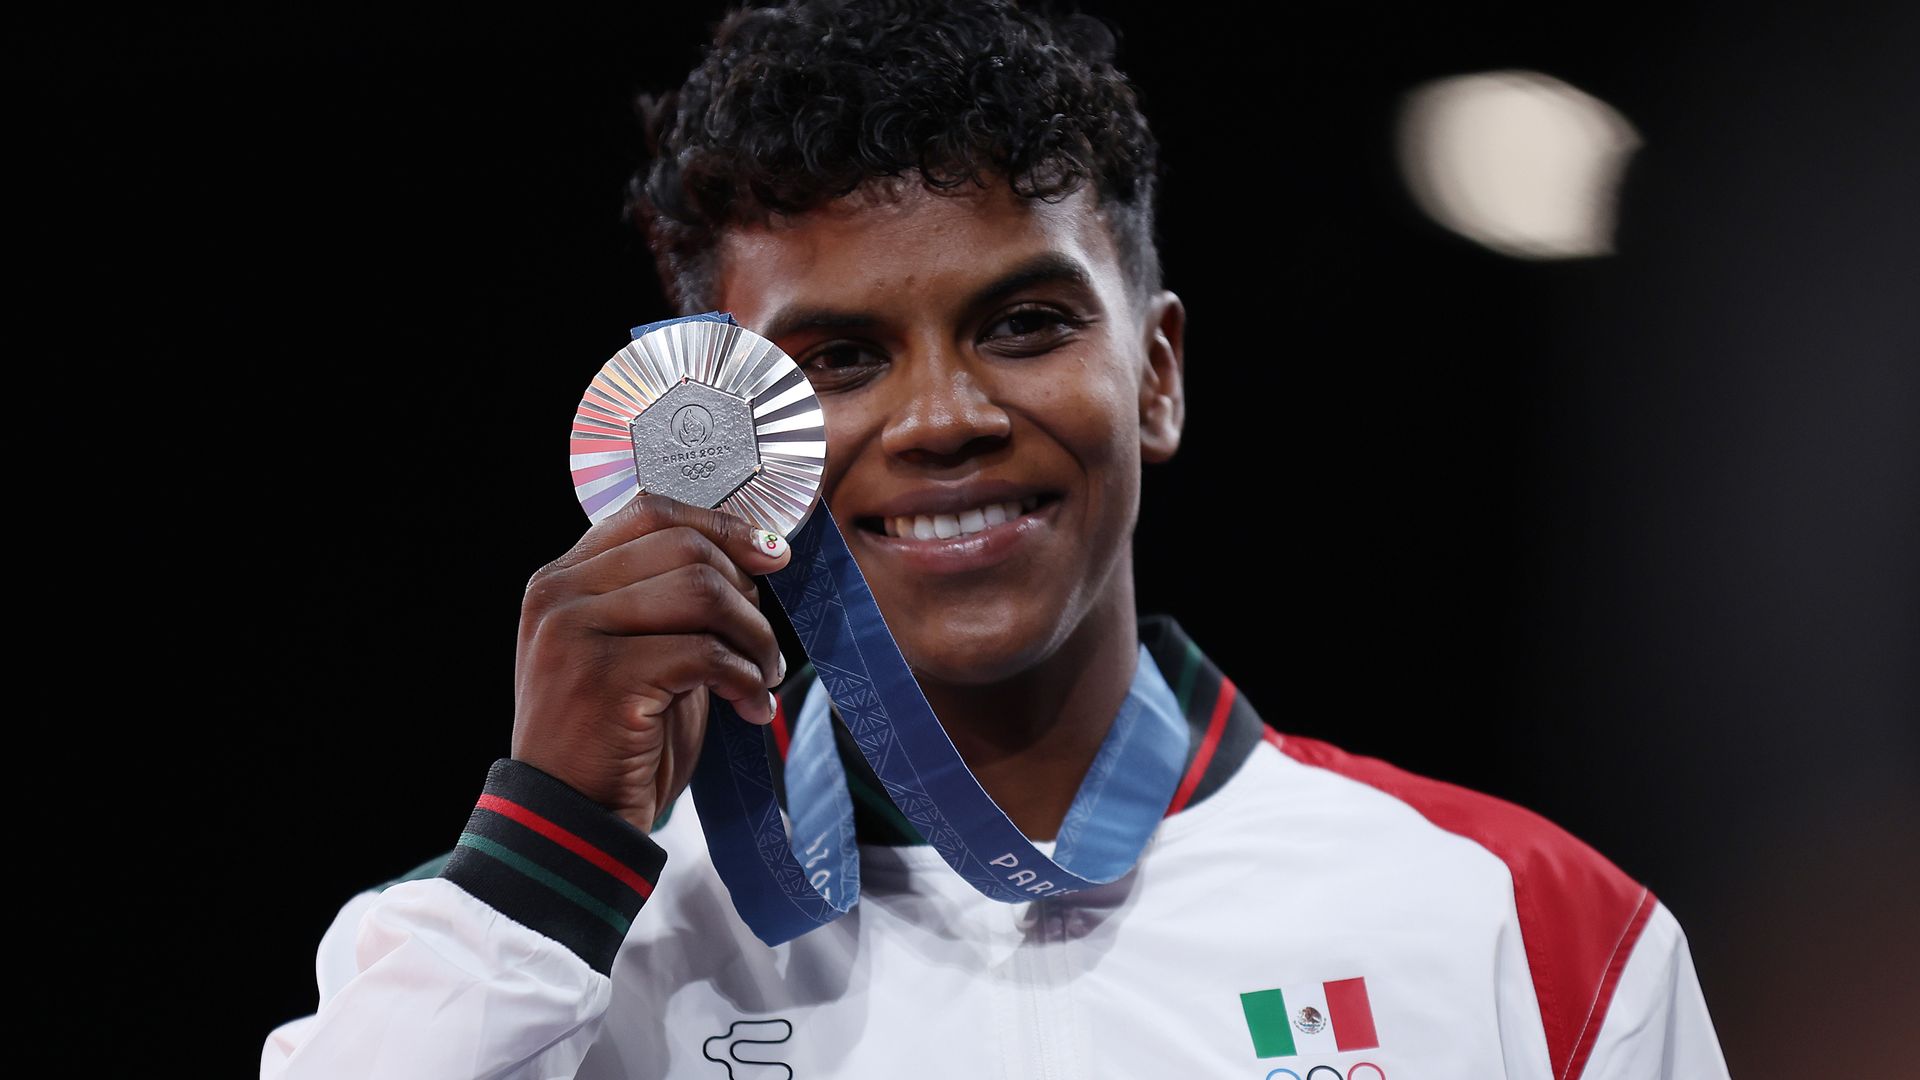 La medalla de Prisca en la primera que obtiene México en judo olímpico. 